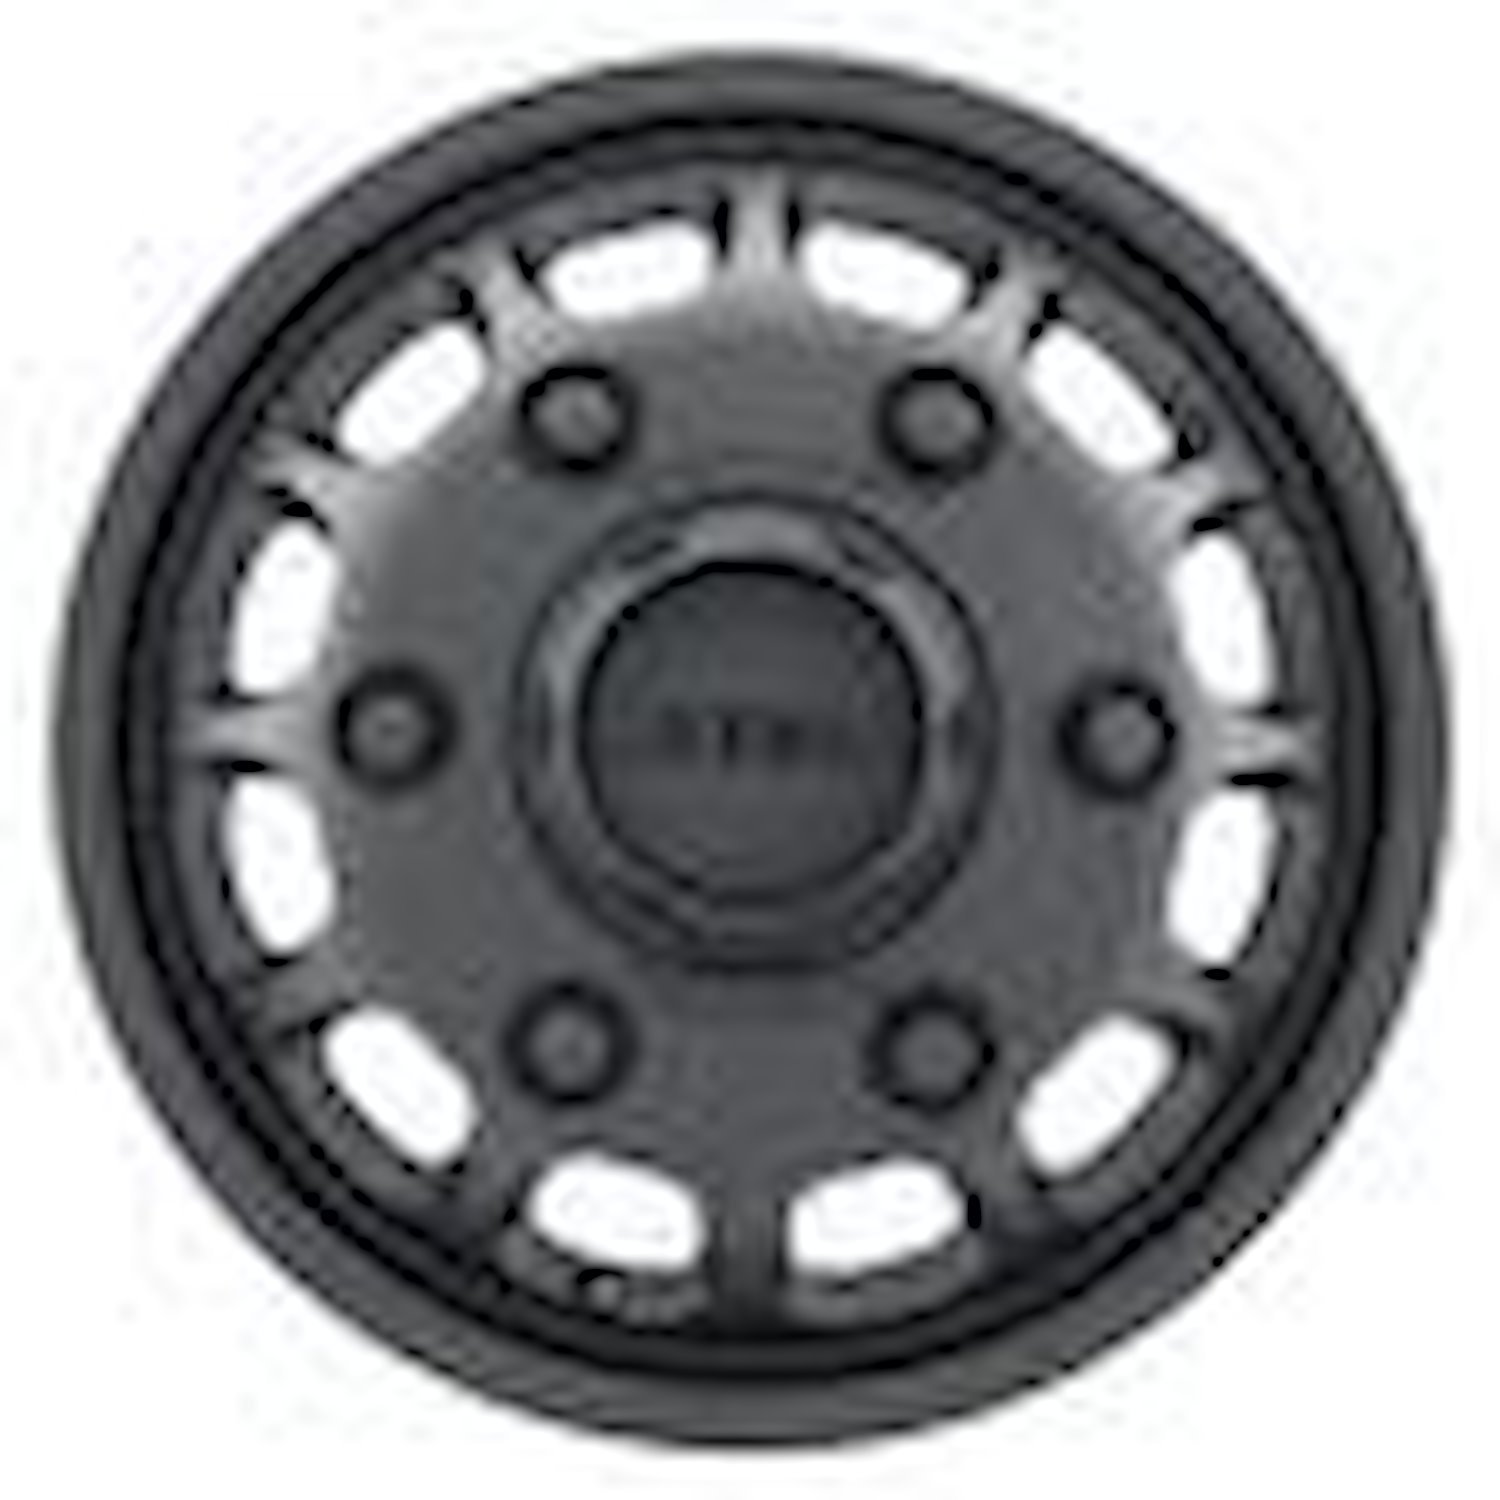 MR901660685110 DUALLY MR901 - FRONT Wheel [Size: 16" x 6"] Matte Black